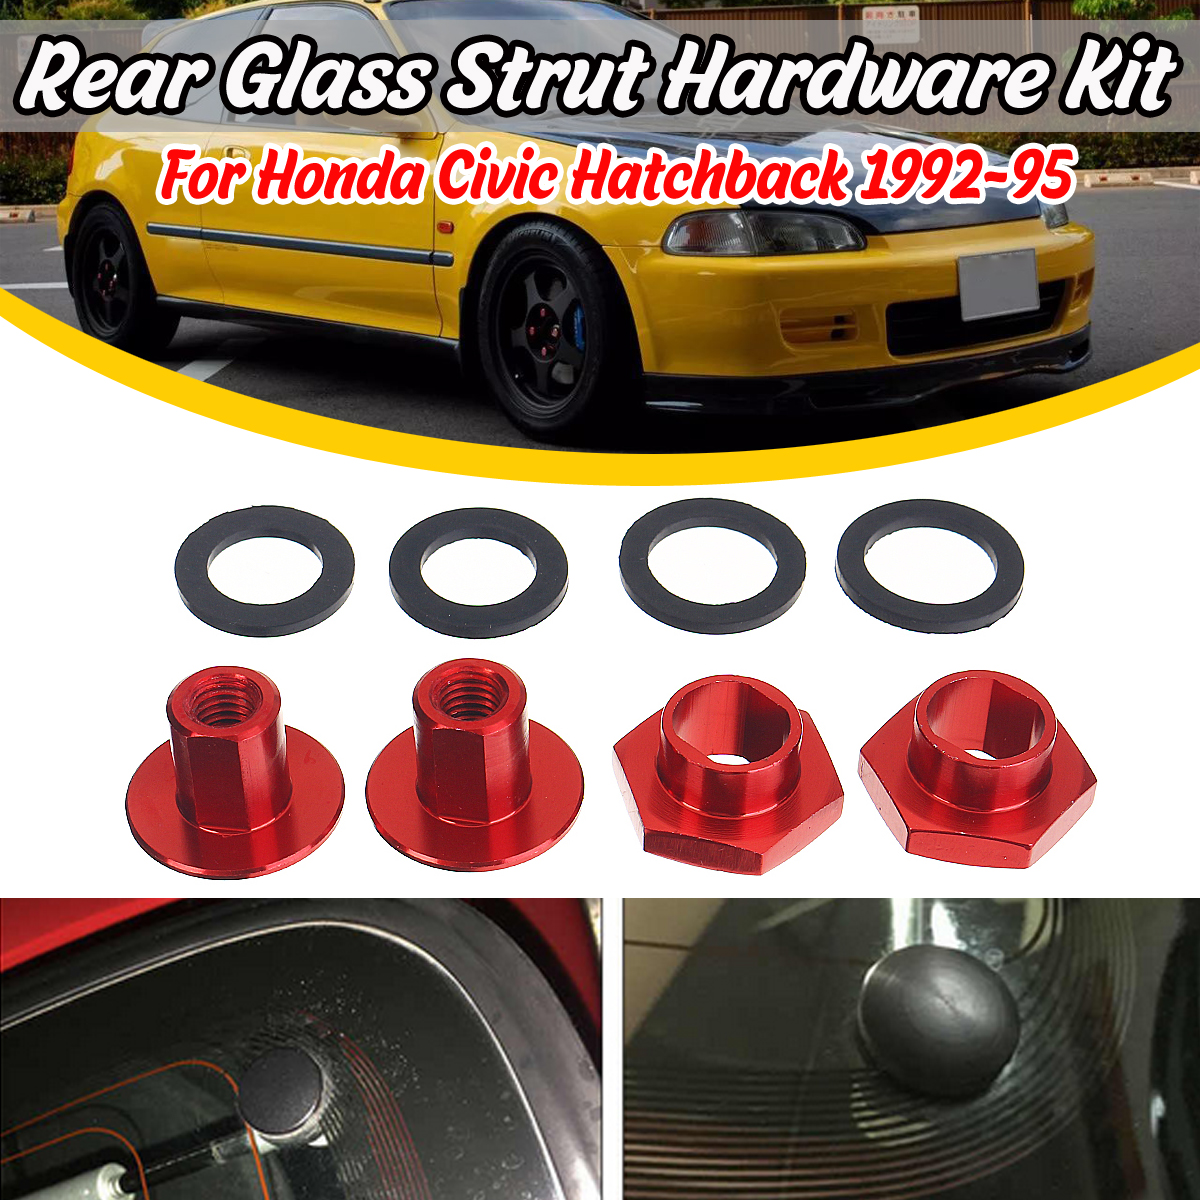 Aluminum Car Rear Glass Strut Hardware Kit For Honda Civic 3Dr Hatchback EG6 CRV